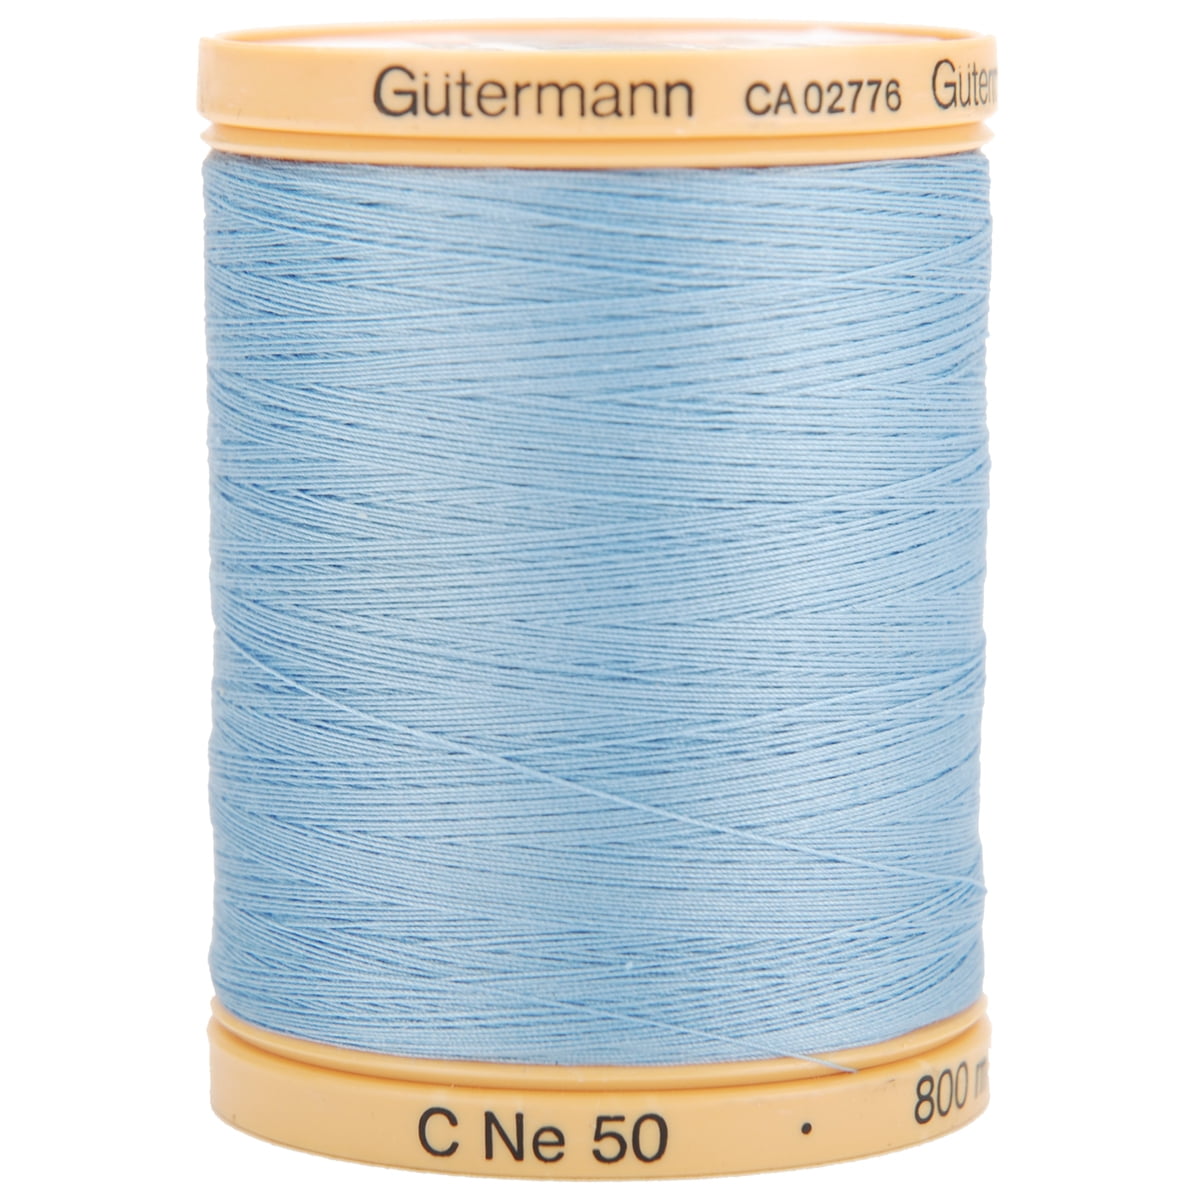 Gutermann Cotton Thread - Black, 876 yd Spool